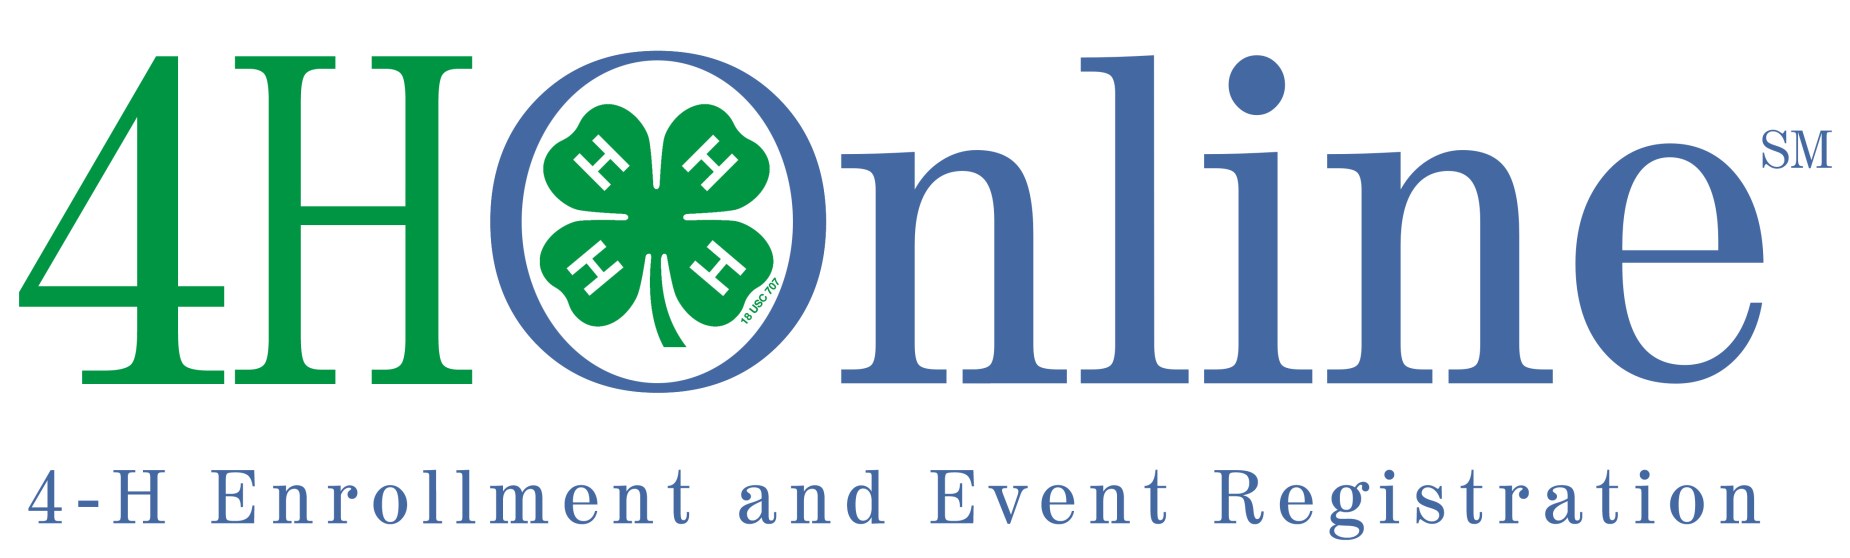 4HOnline logo